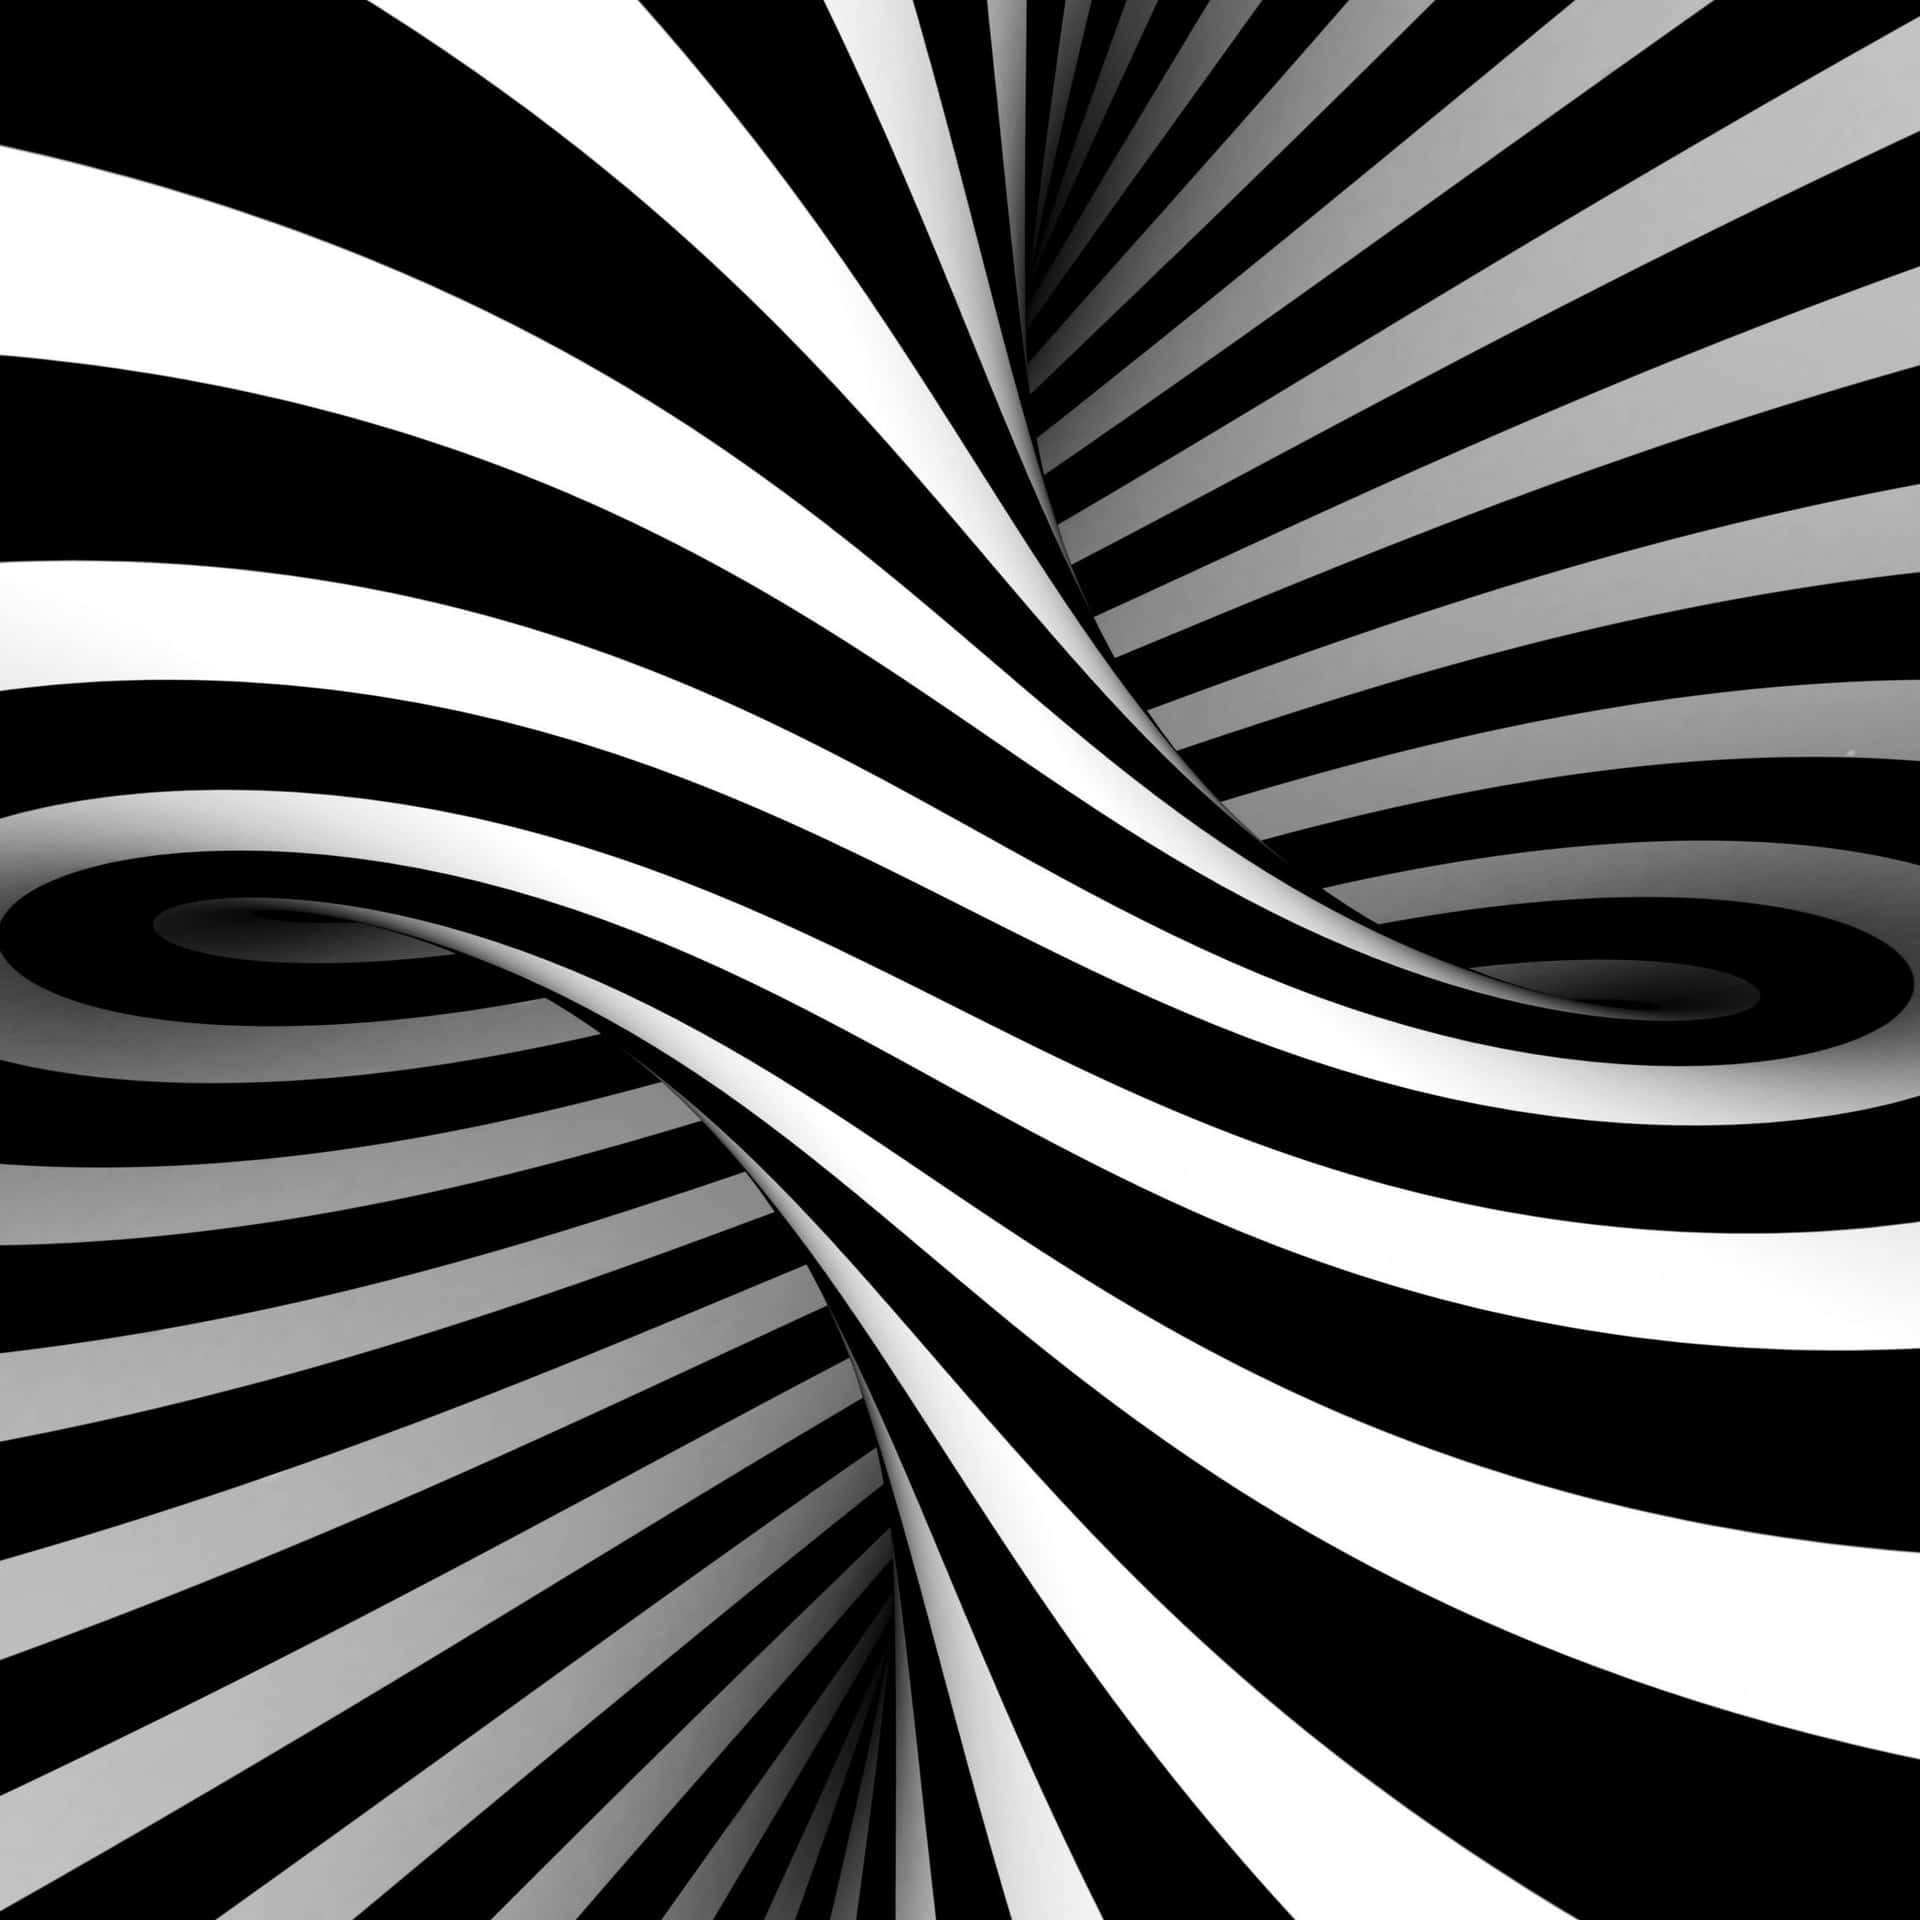 Schwarzeund Weiße Streifen-illusionskunst Wallpaper